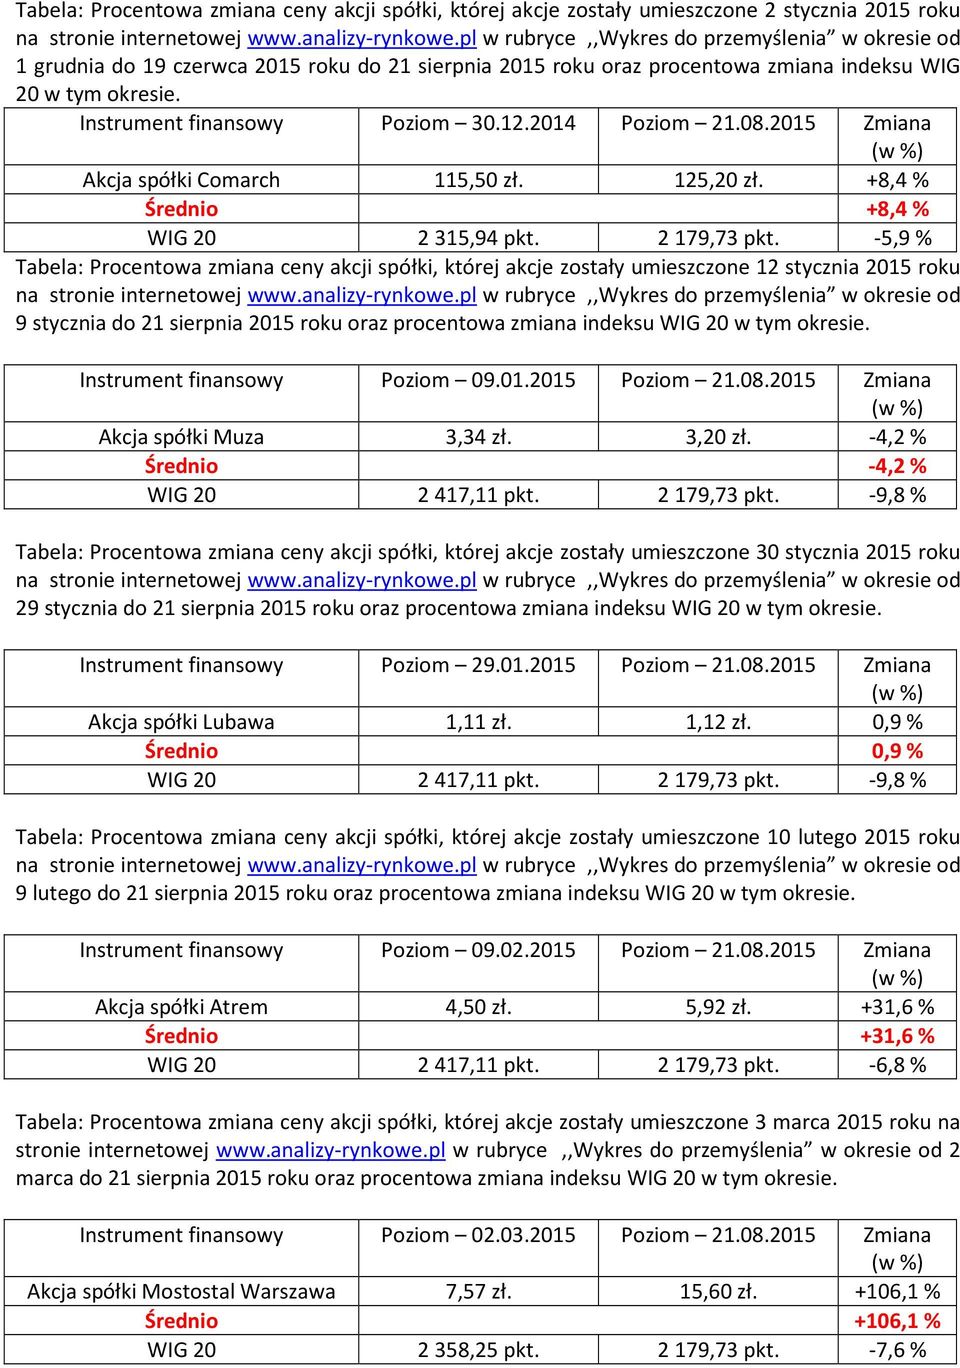 2014 Poziom 21.08.2015 Zmiana Akcja spółki Comarch 115,50 zł. 125,20 zł. +8,4 % Średnio +8,4 % WIG 20 2315,94 pkt. 2179,73 pkt.